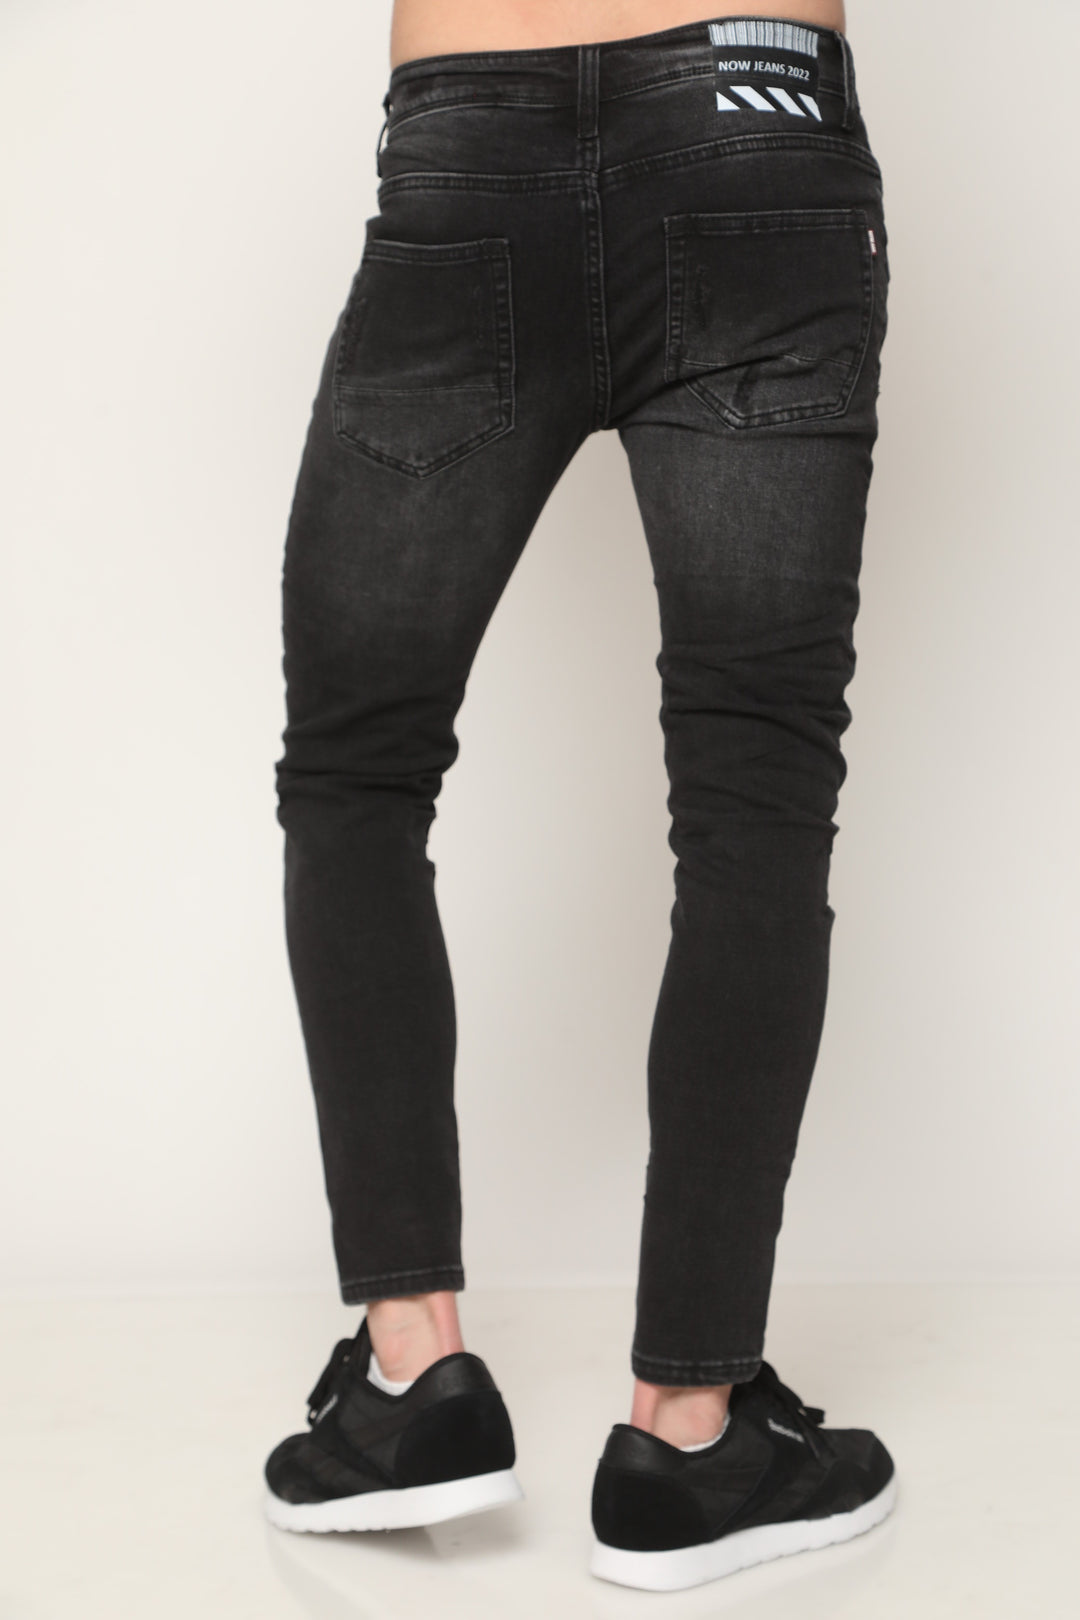 ג'ינס סופר סקיני 730 - canavaro jeans